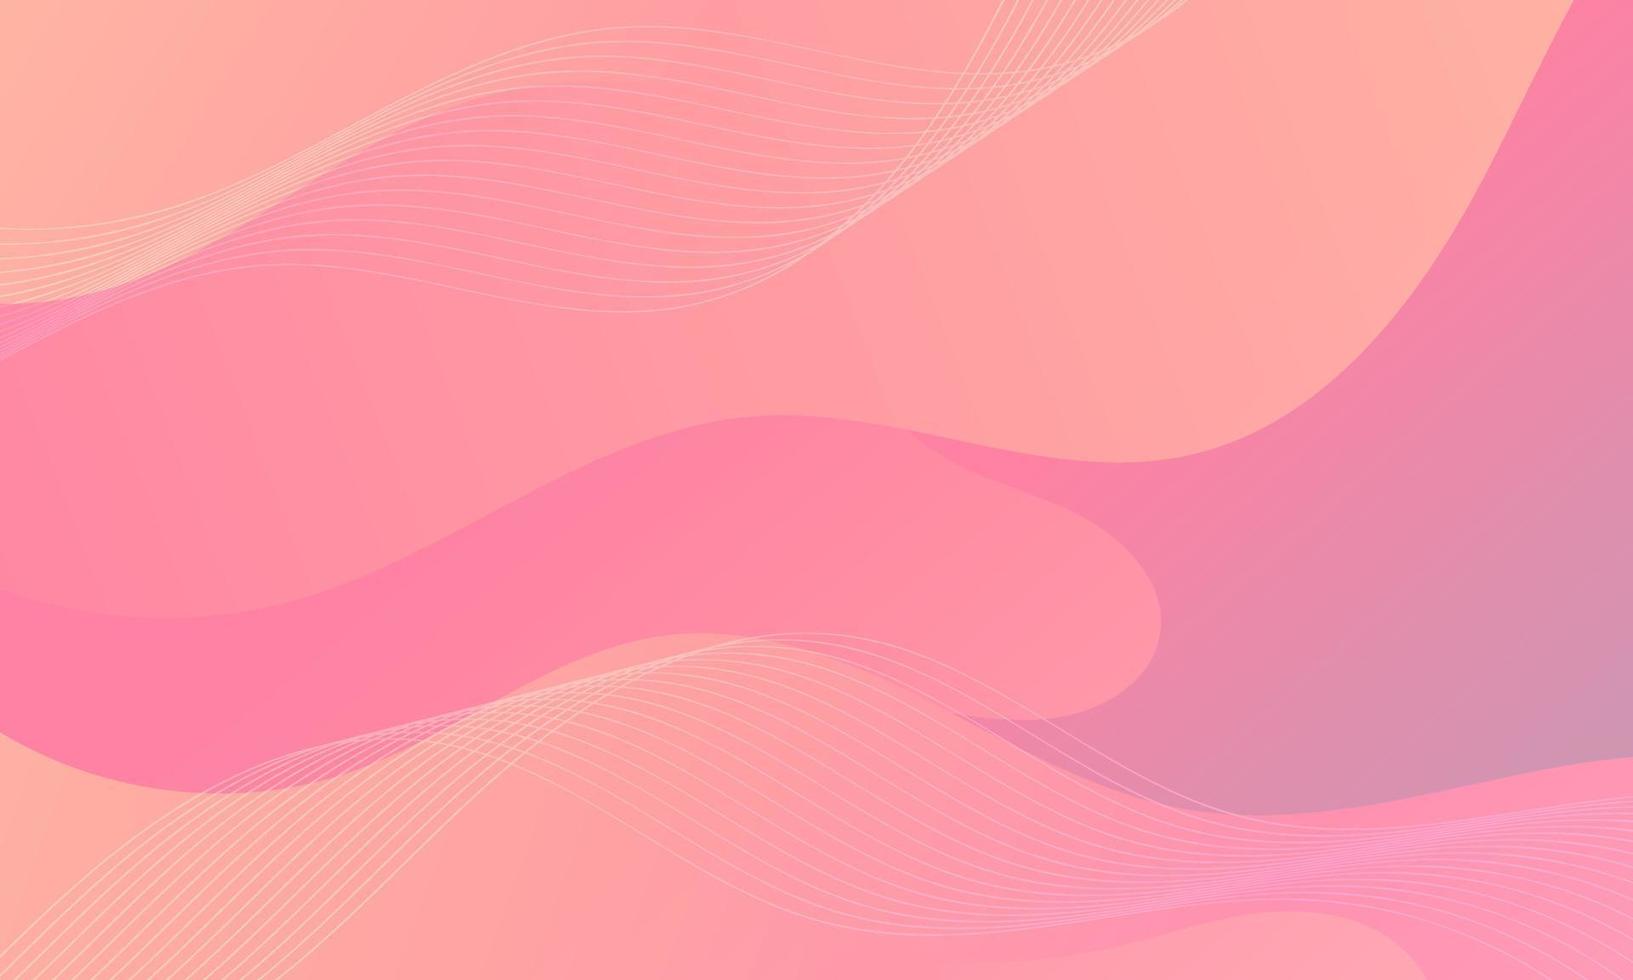 abstrakt rosa vätskevåg bakgrund vektor